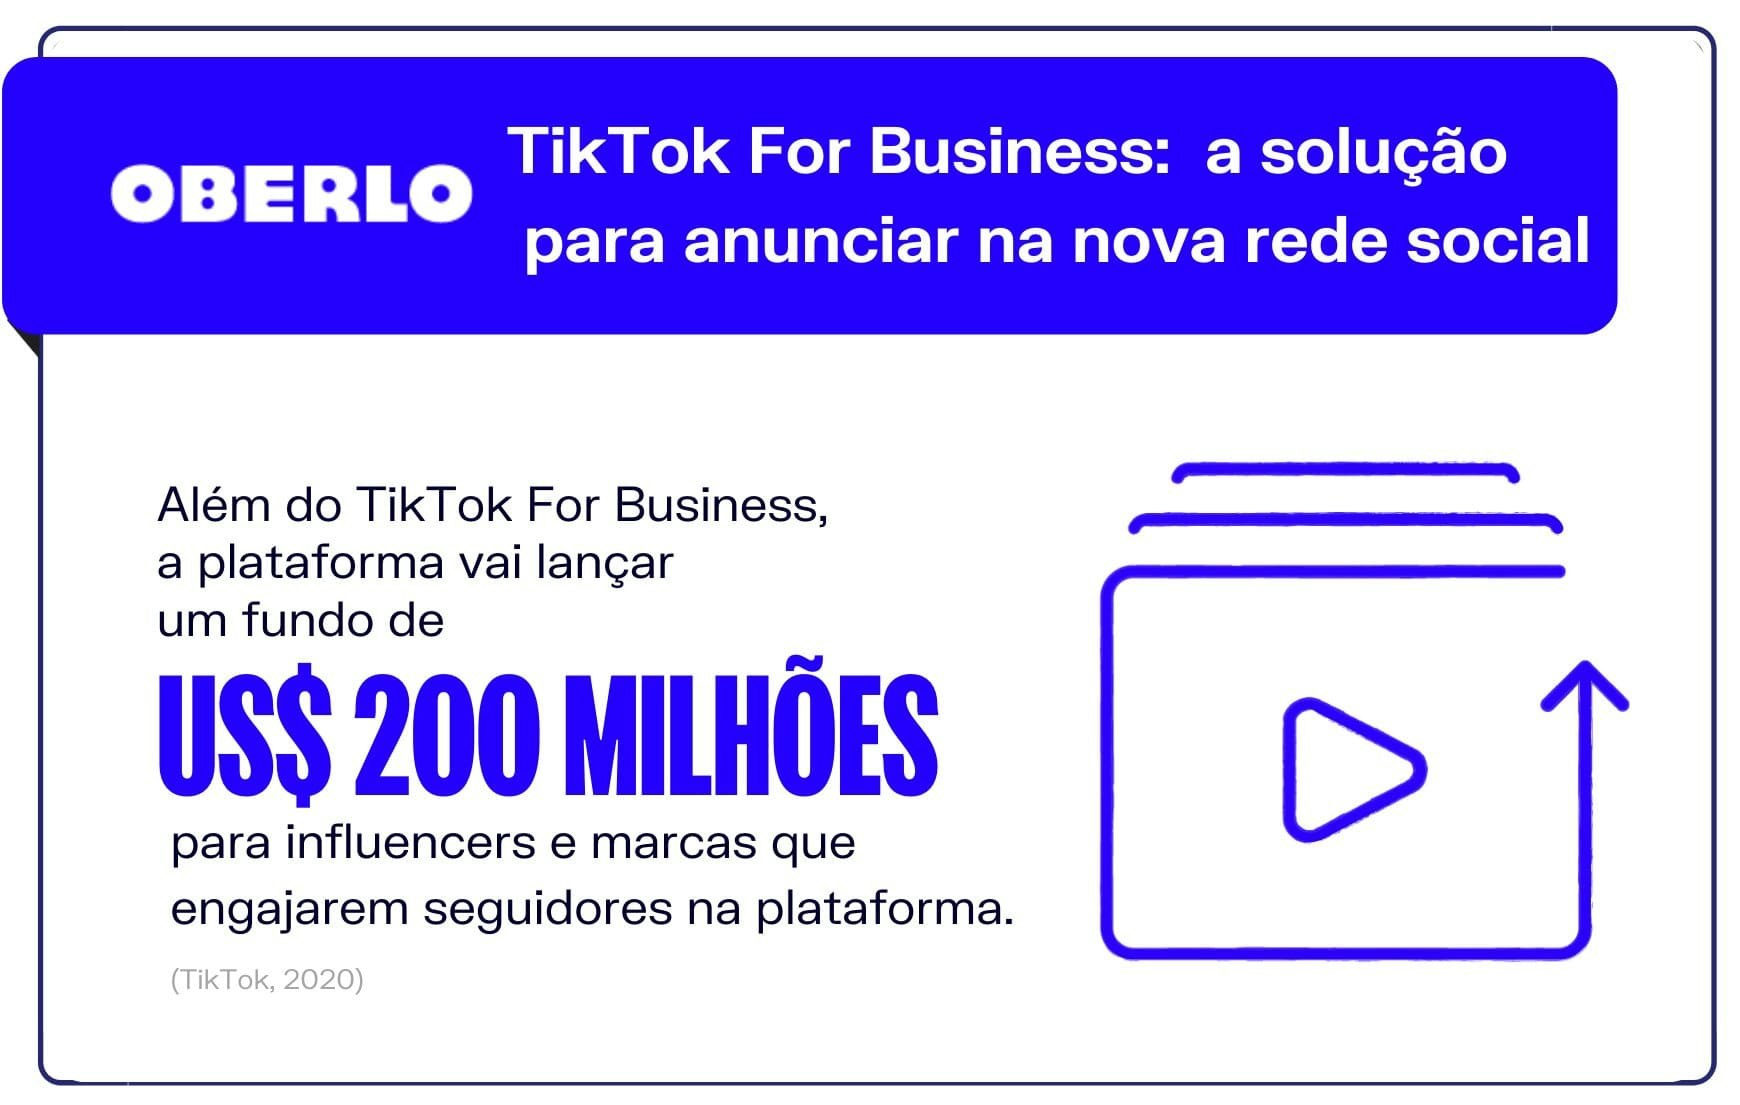 TikTok For Business: a solução para anunciar na nova rede social